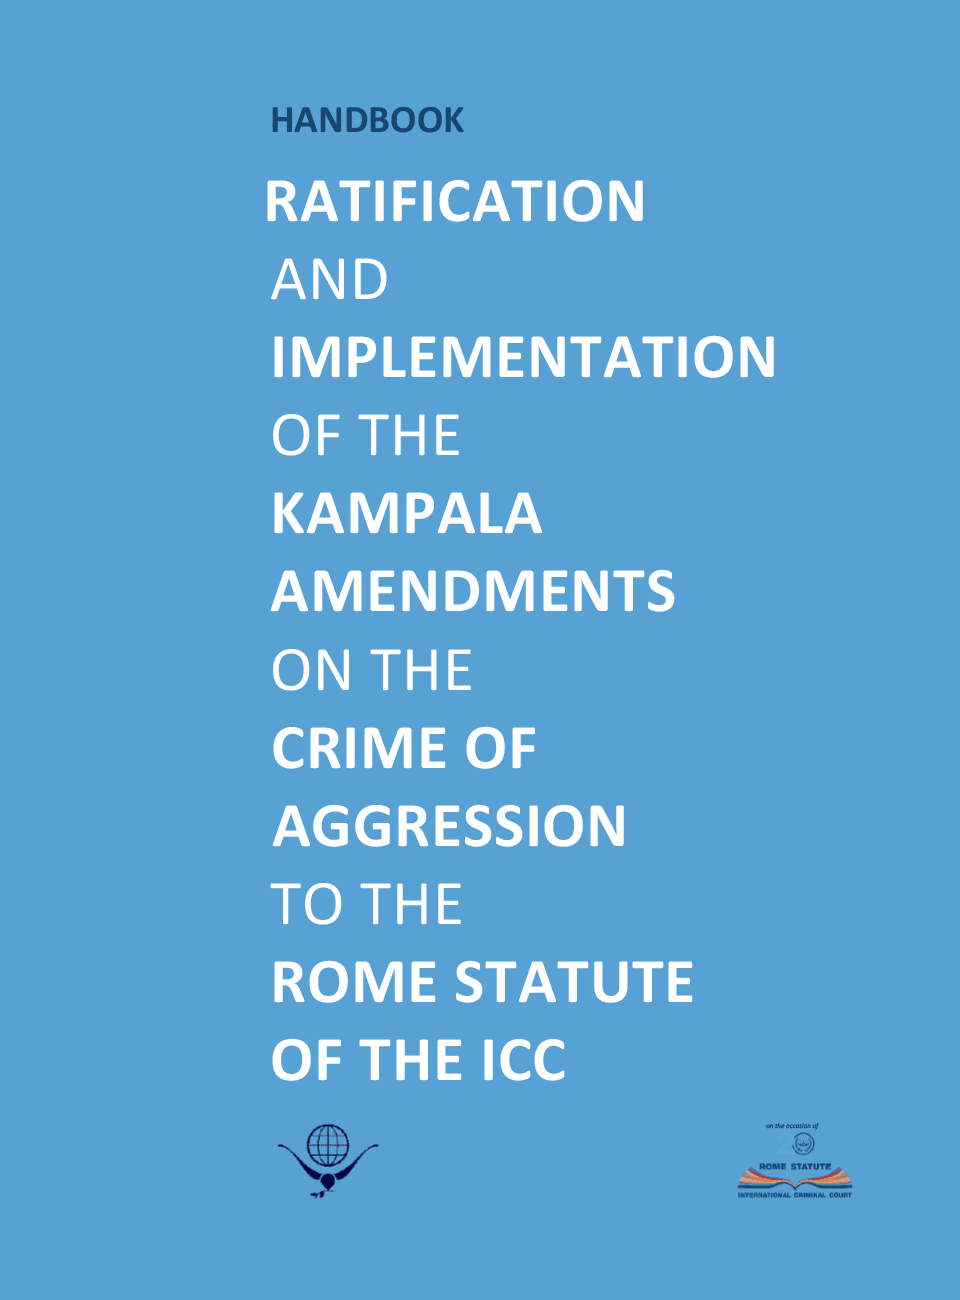 Manuel de ratification et de mise en œuvre des amendements de Kampala au Statut de Rome de la CPI sur le crime d’agression